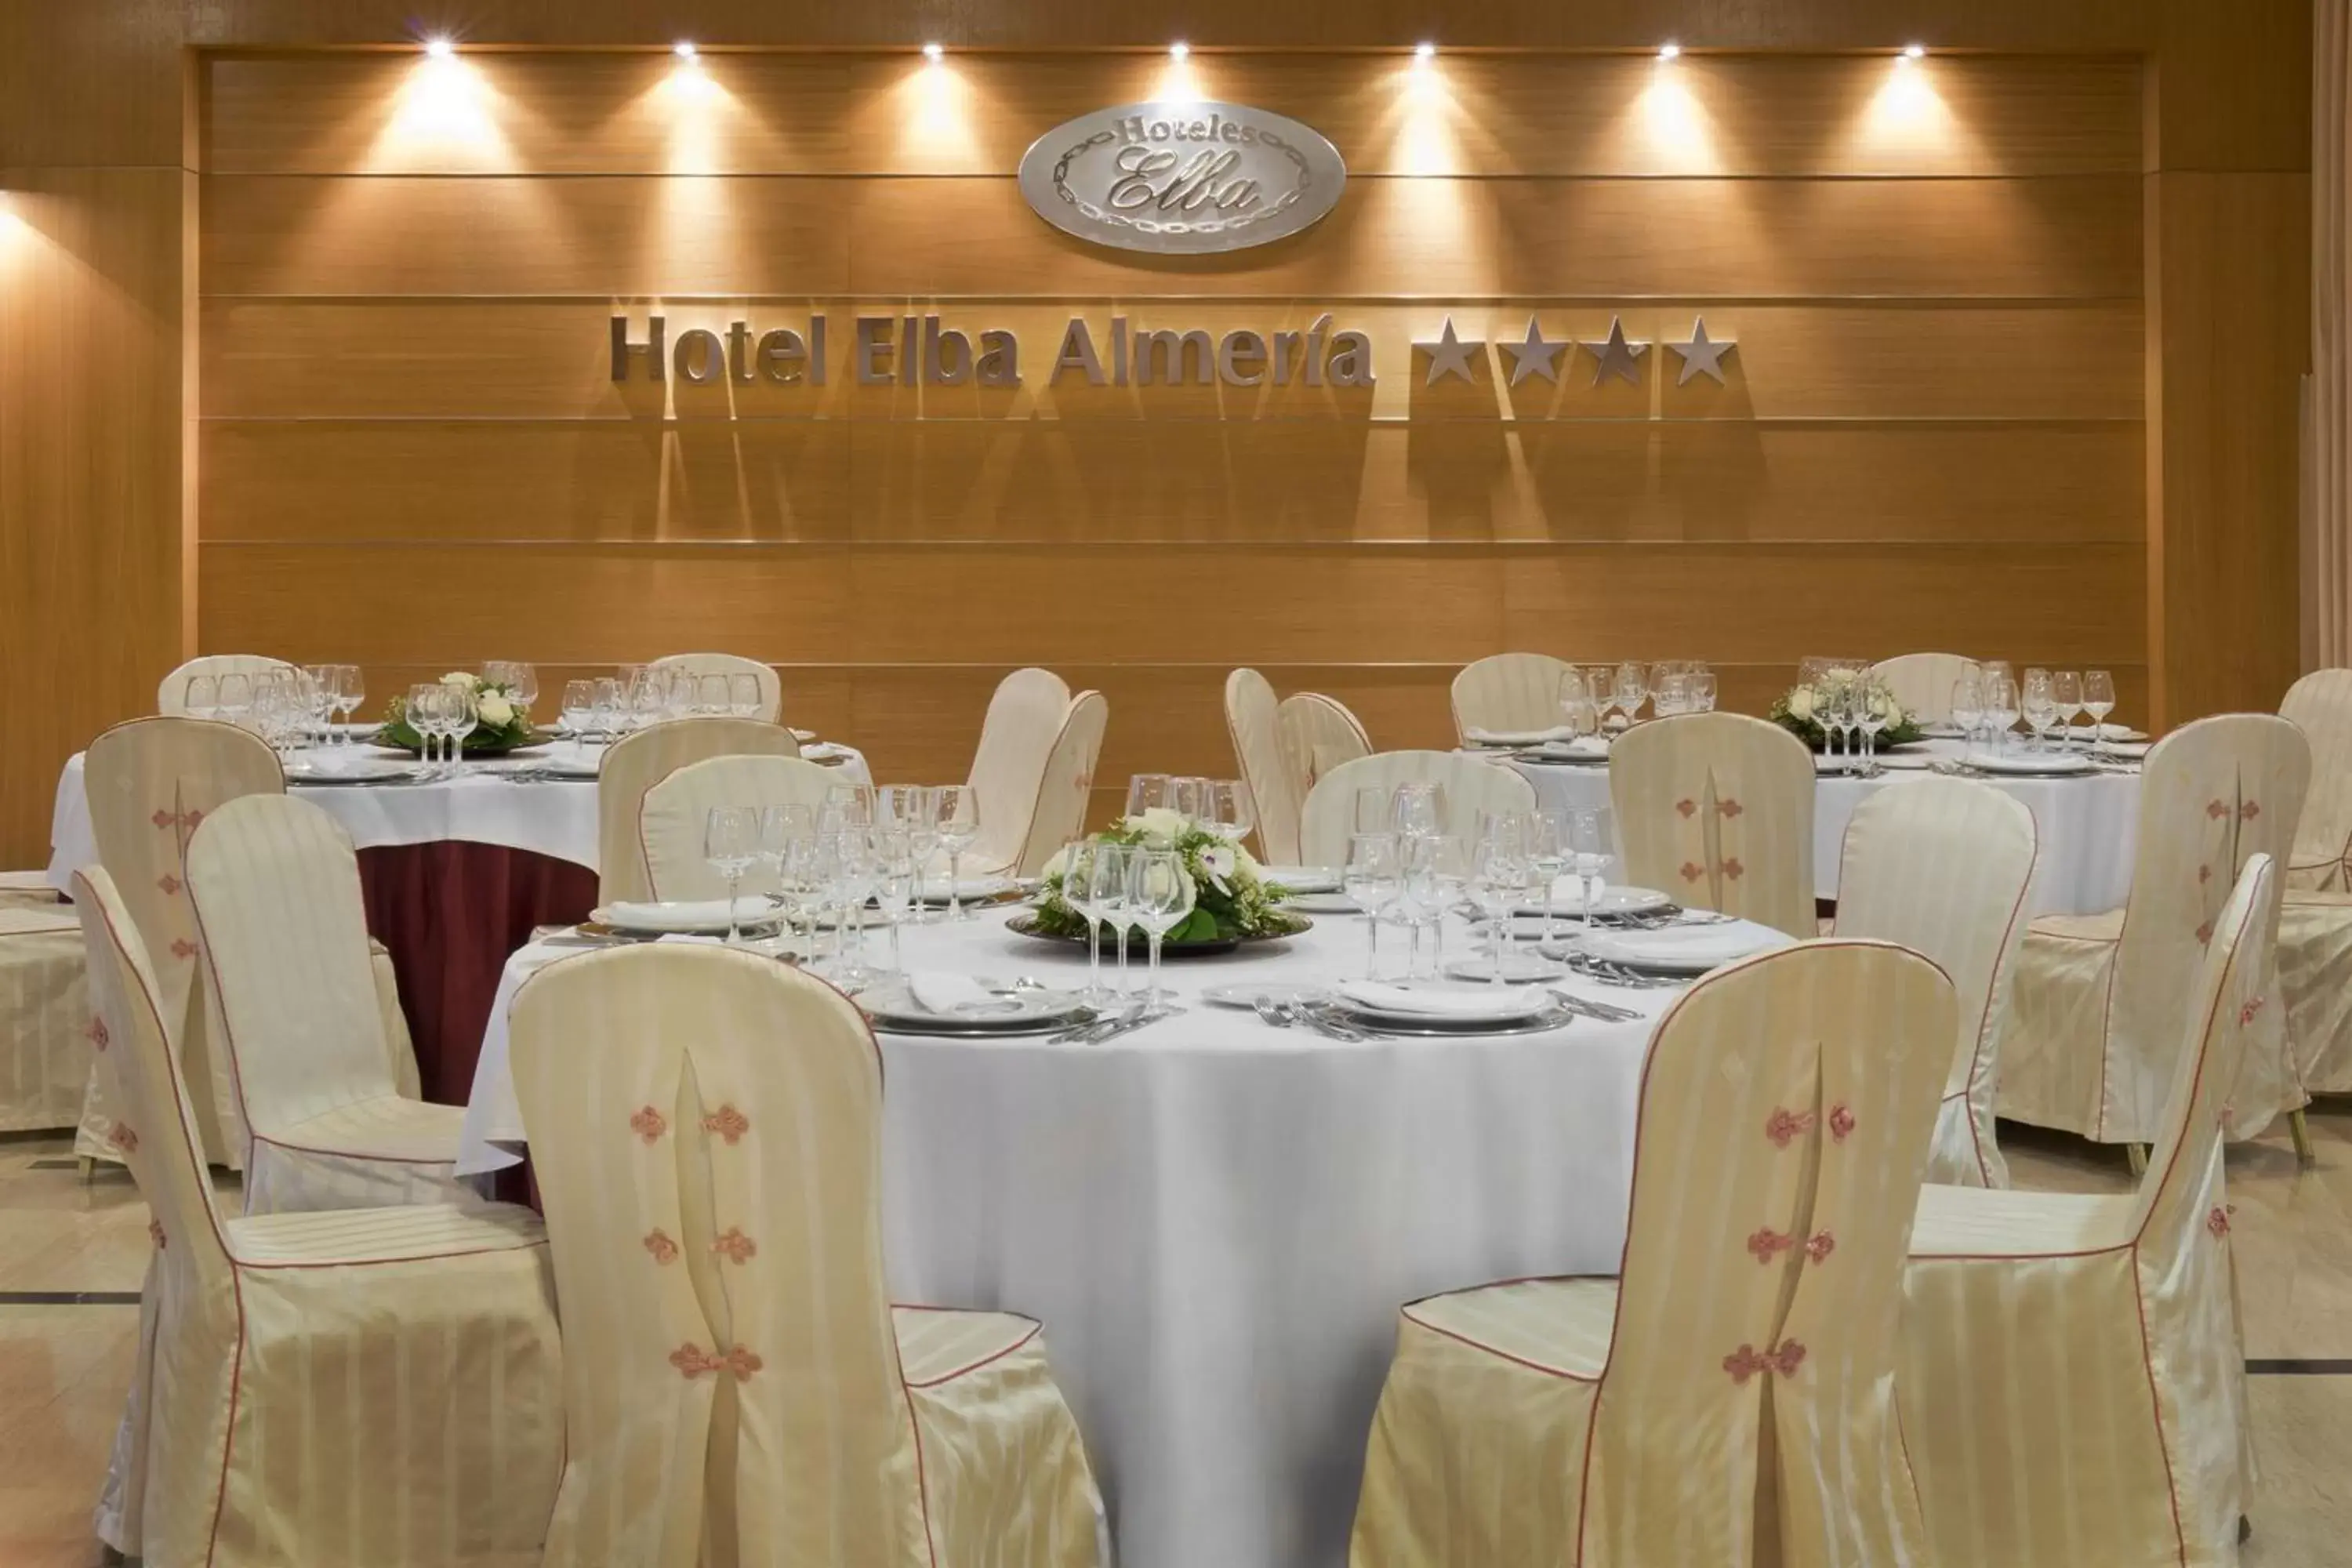 Banquet/Function facilities, Banquet Facilities in Elba Almeria Business & Convention Hotel